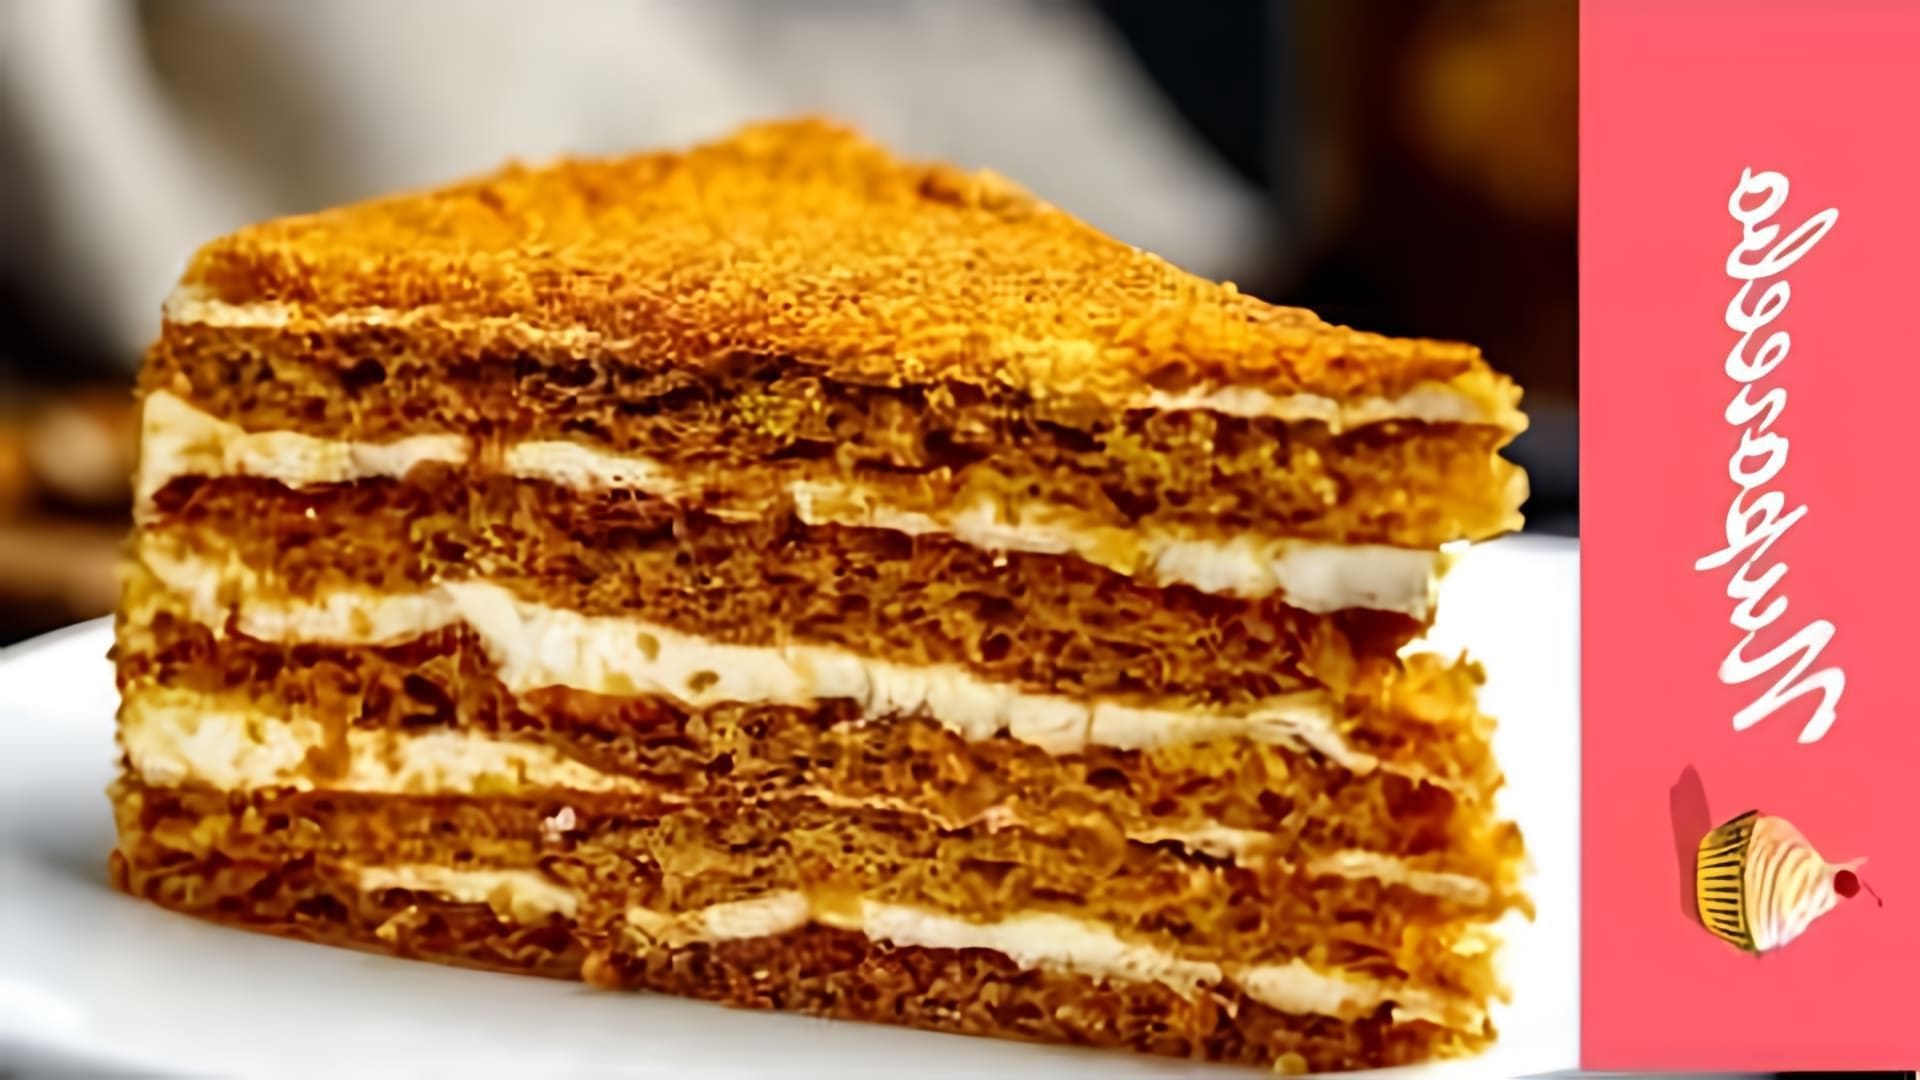 Видео описывает, как приготовить медовый торт из жидкого теста, а не раскатывая тесто